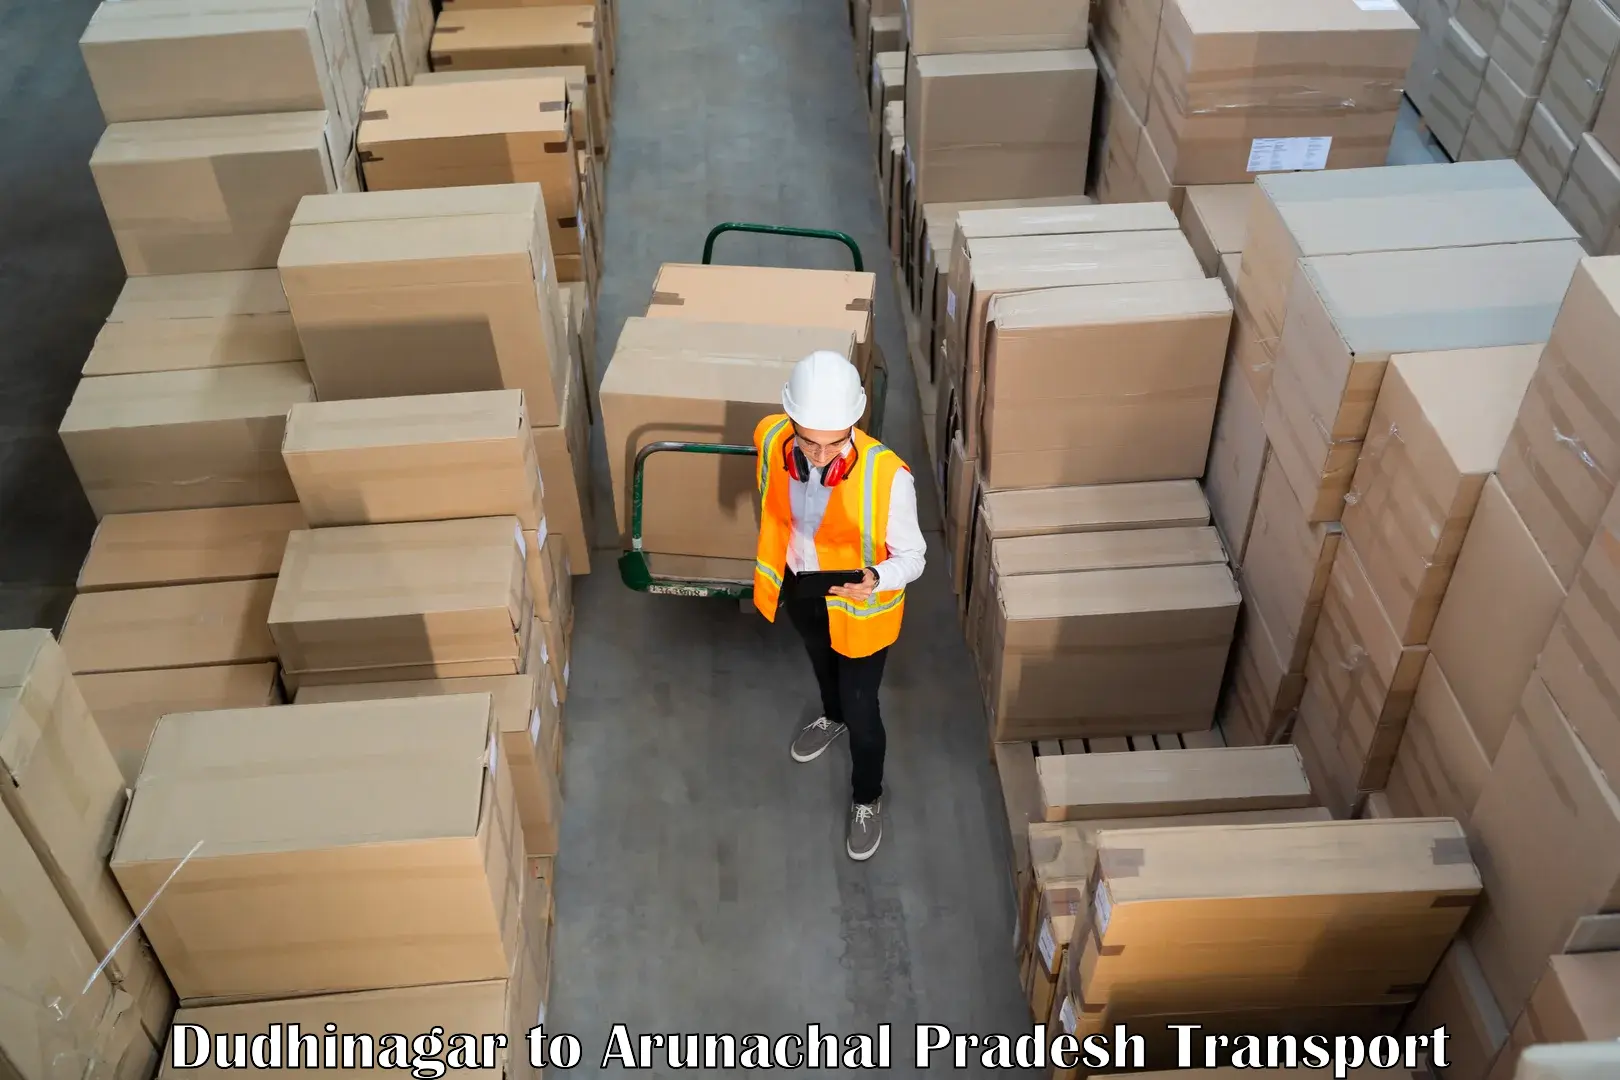 Goods delivery service Dudhinagar to Itanagar